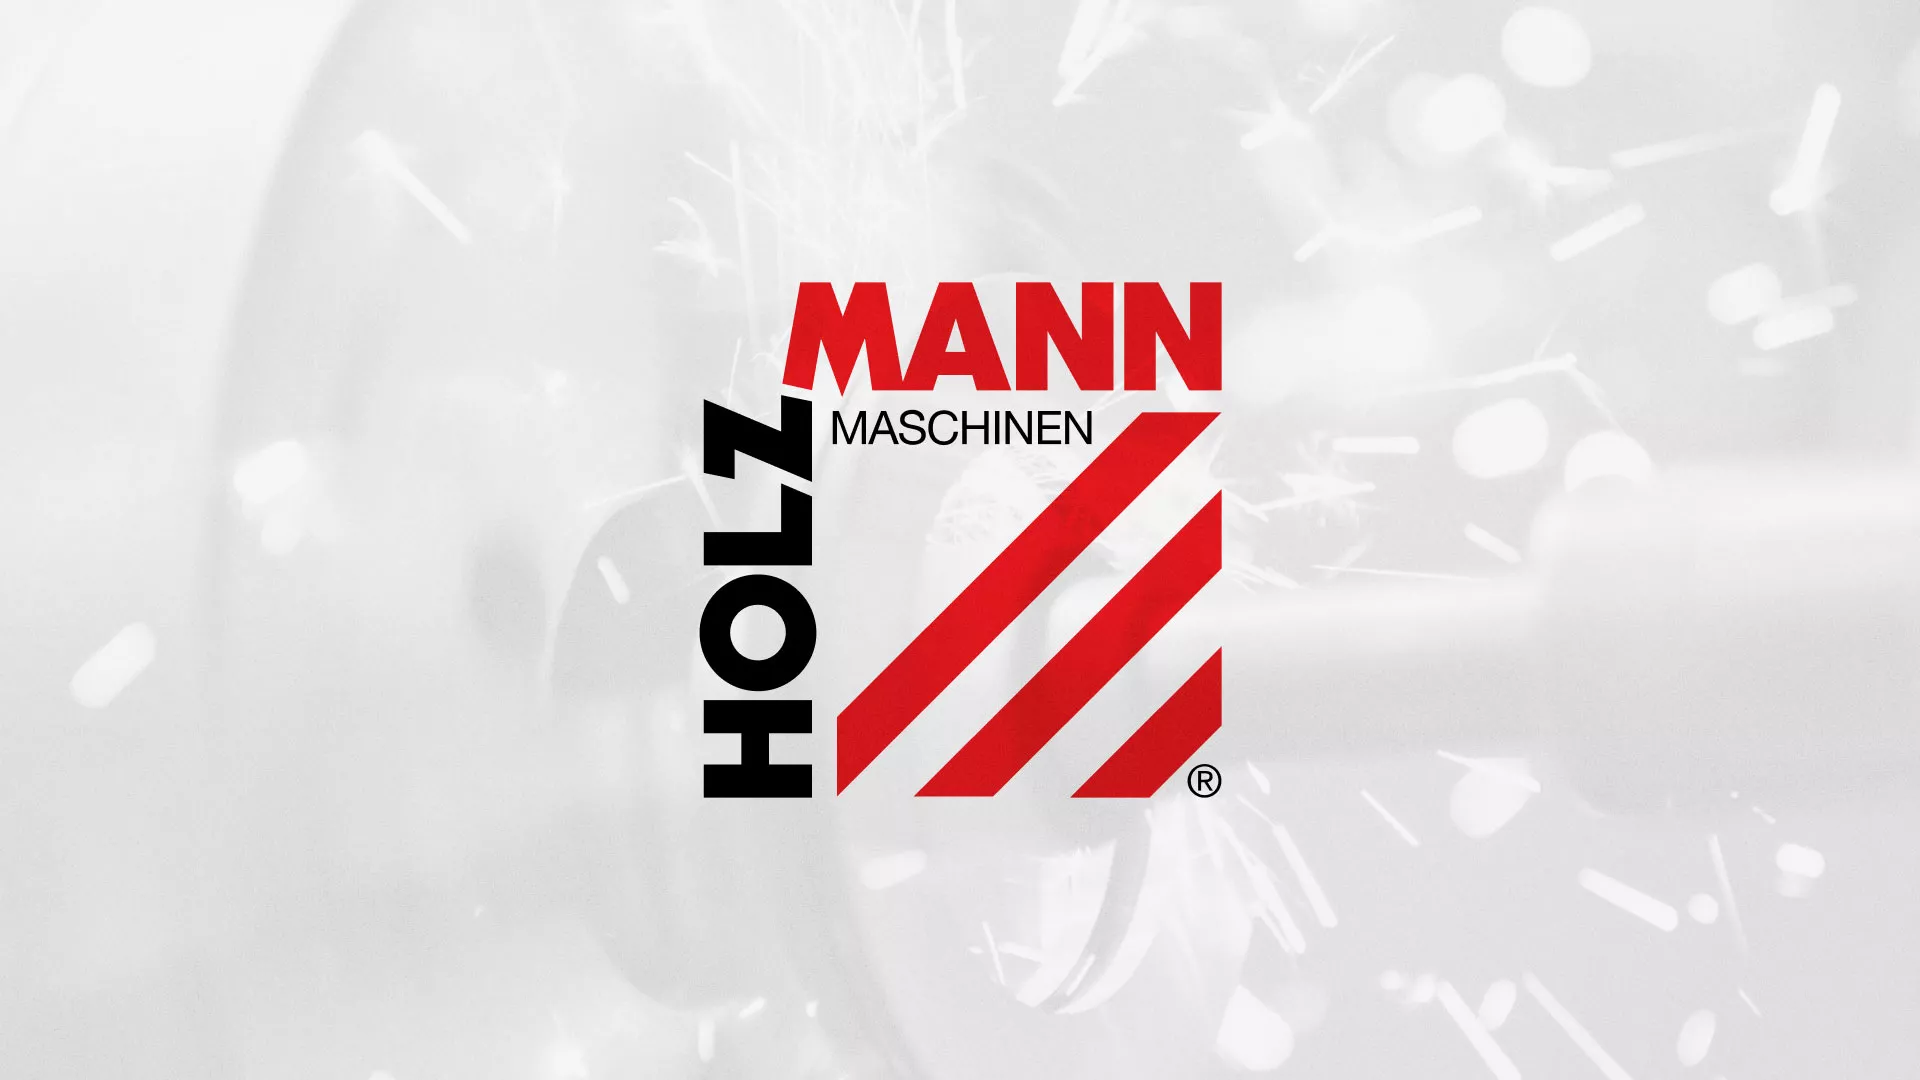 Создание сайта компании «HOLZMANN Maschinen GmbH» в Качканаре